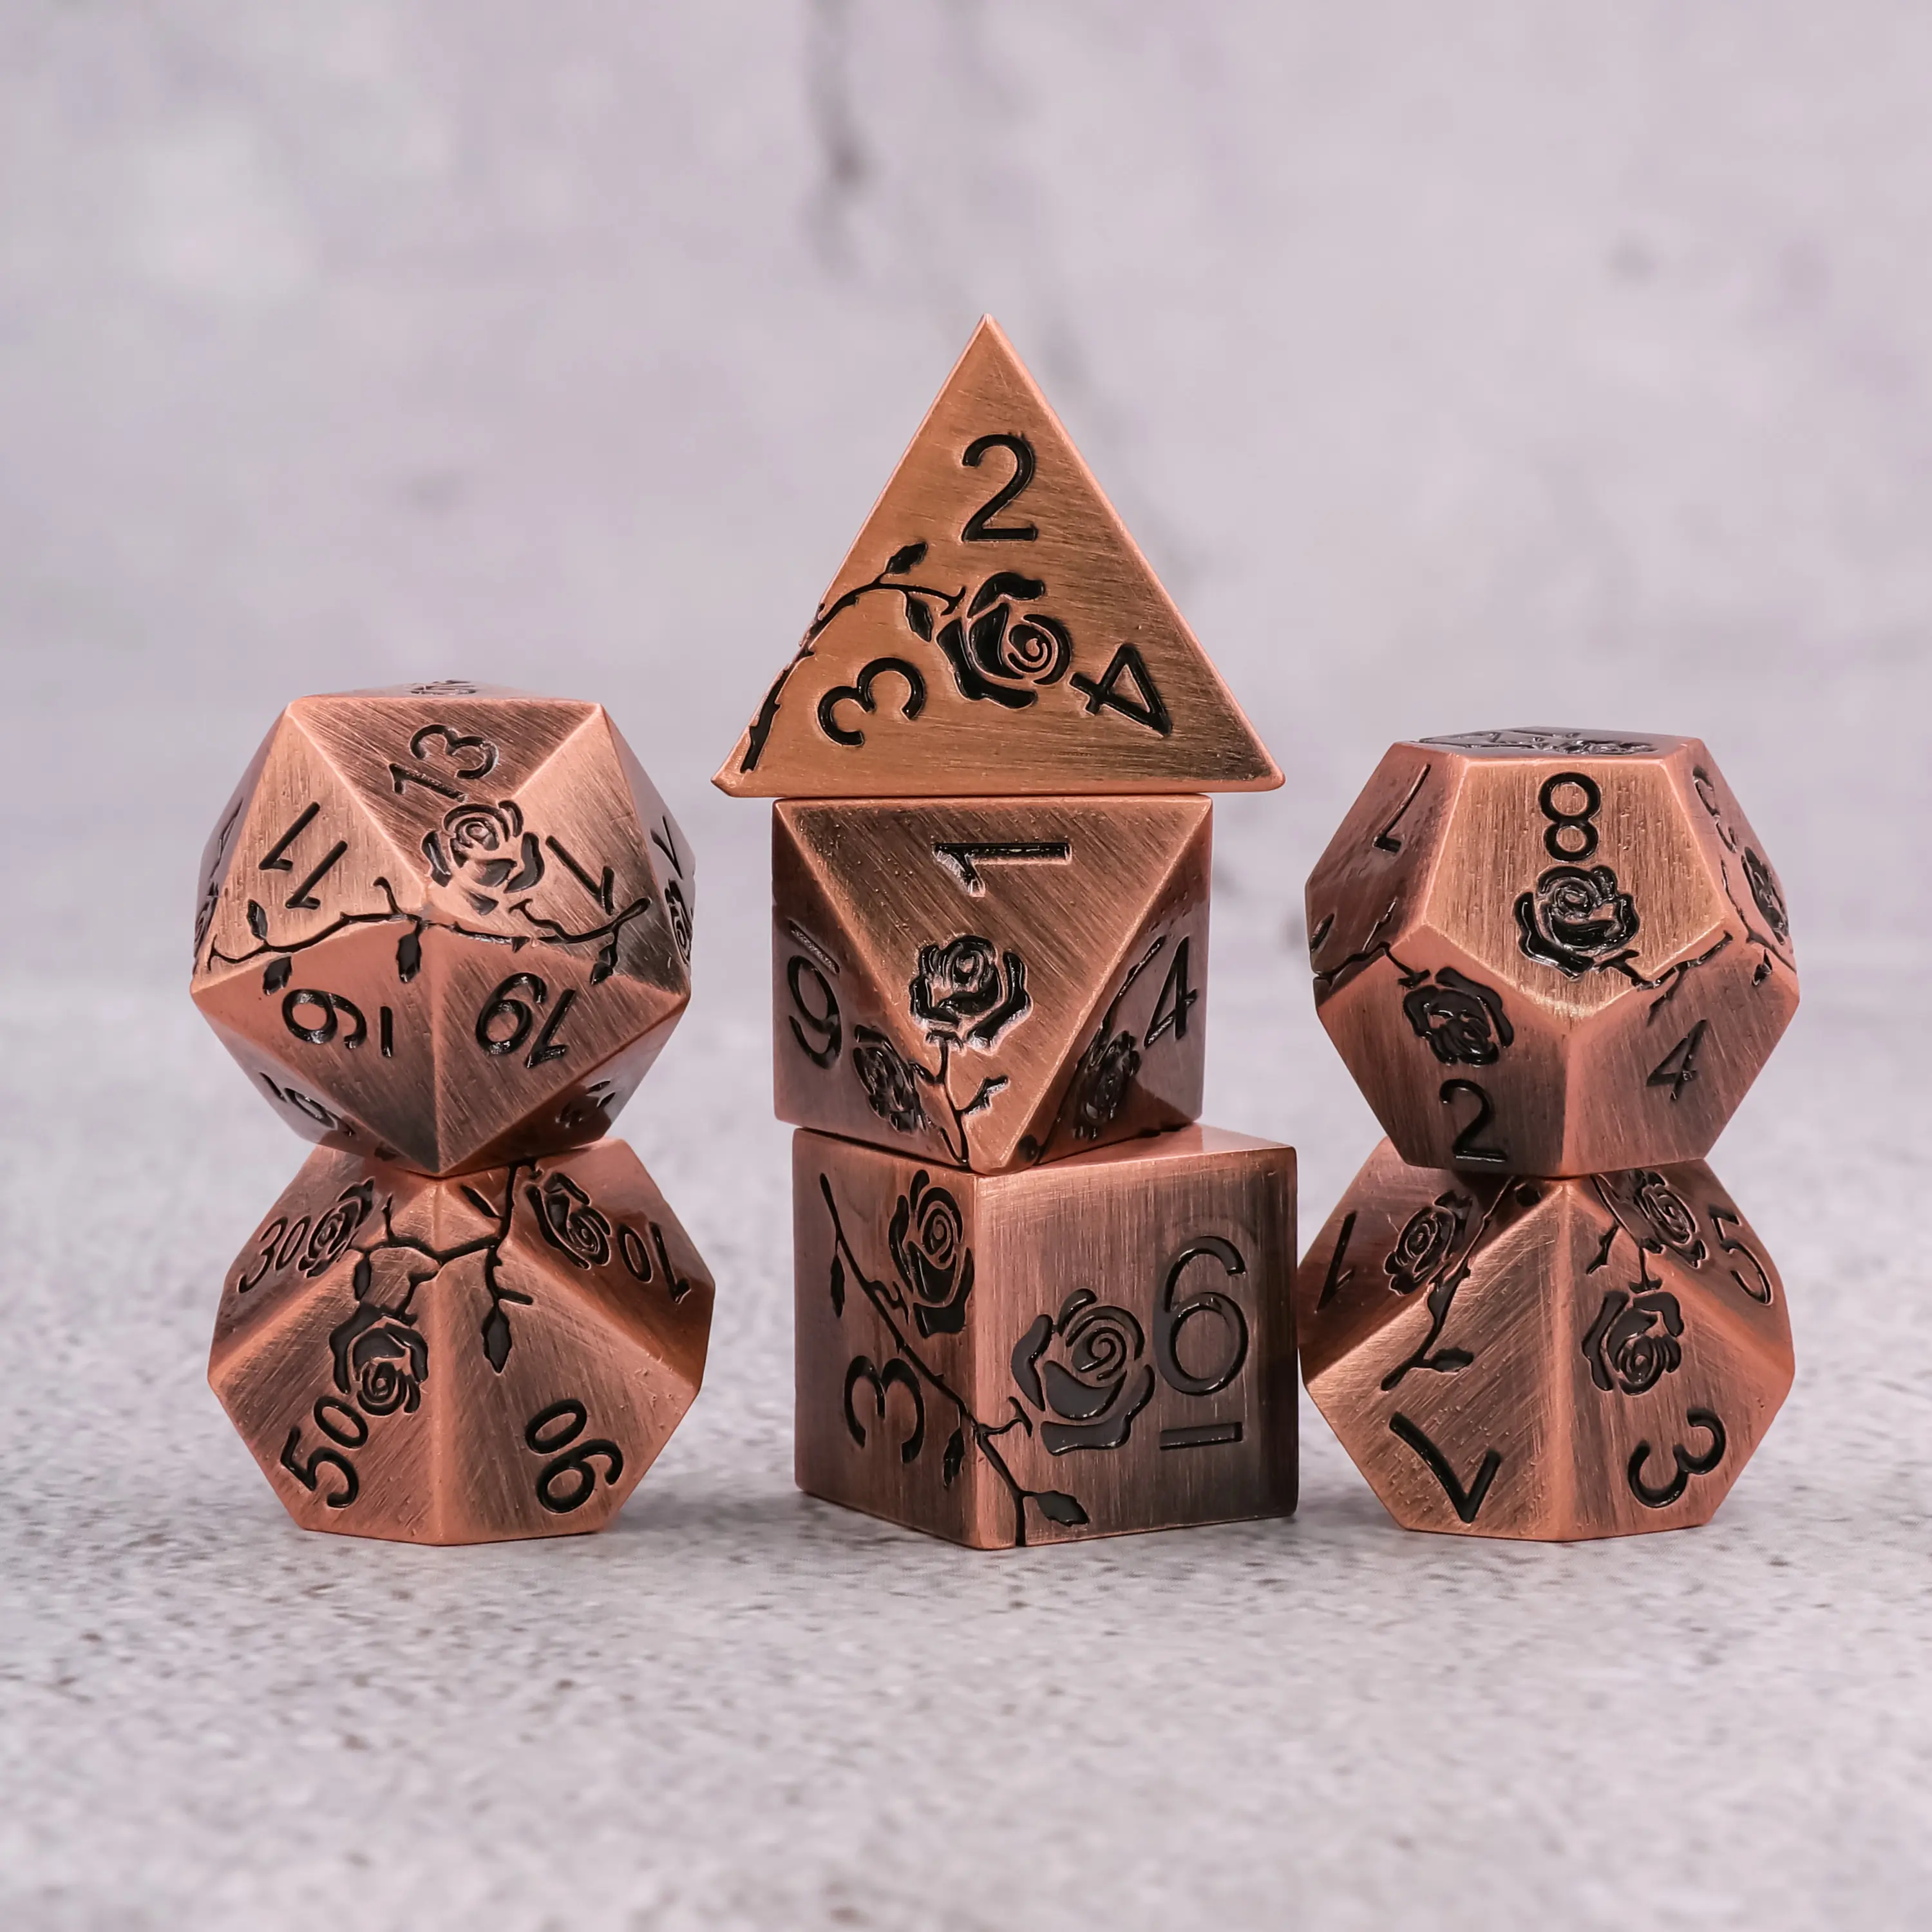 RTS Rose Carving DND Würfel Tisch Spiel zubehör Polyed rische Metall würfel Set mit Zahlen 7 Stück D & D Mit Box Verpackung Metall würfel